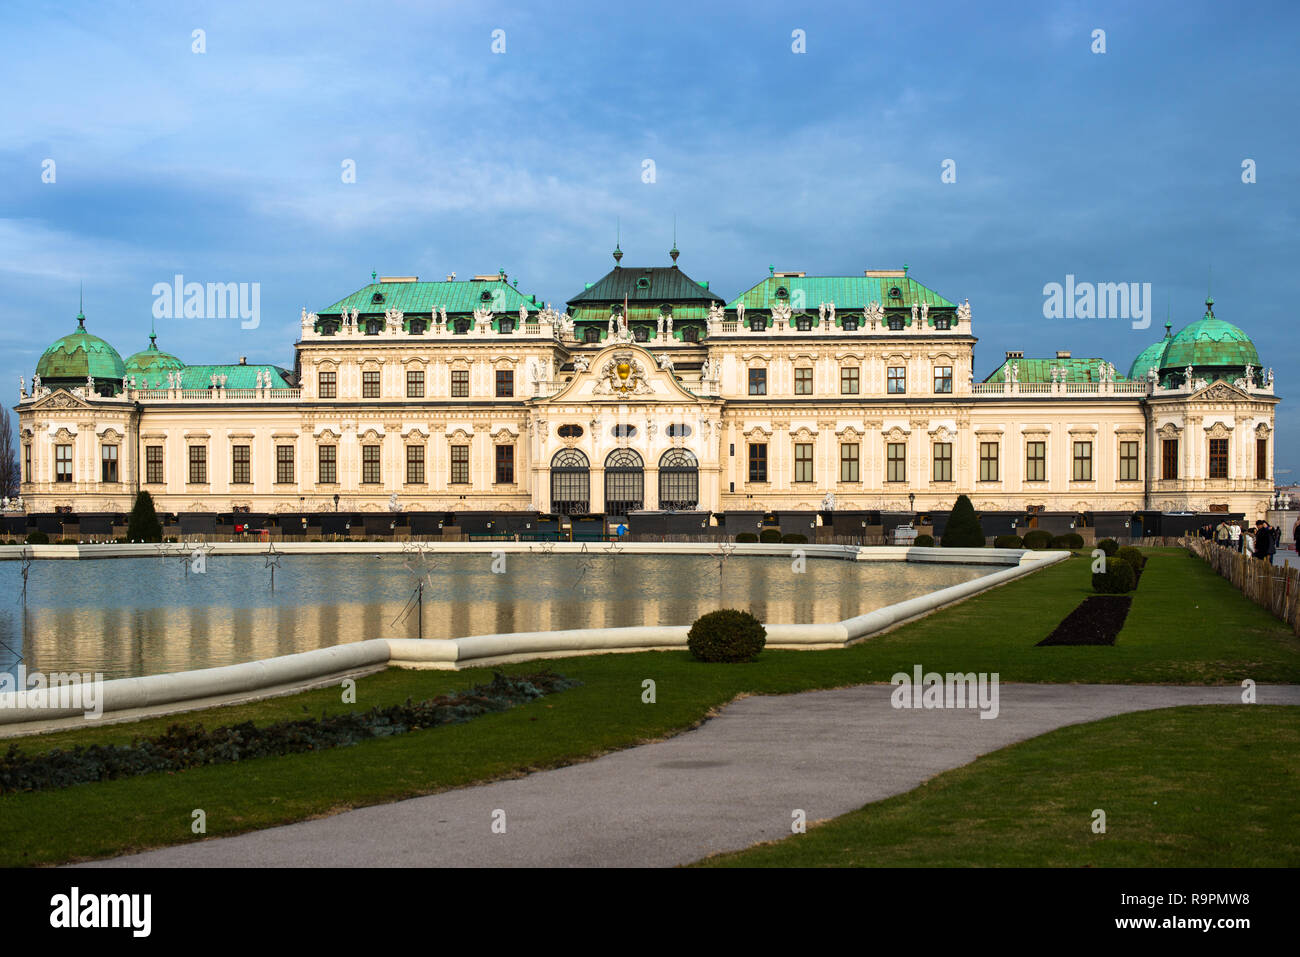 Belvedere superiore Panorama Palace, un palazzo barocco complesso costruito dal Principe Eugenio di Savoia nel terzo distretto di Vienna. Austria. Foto Stock